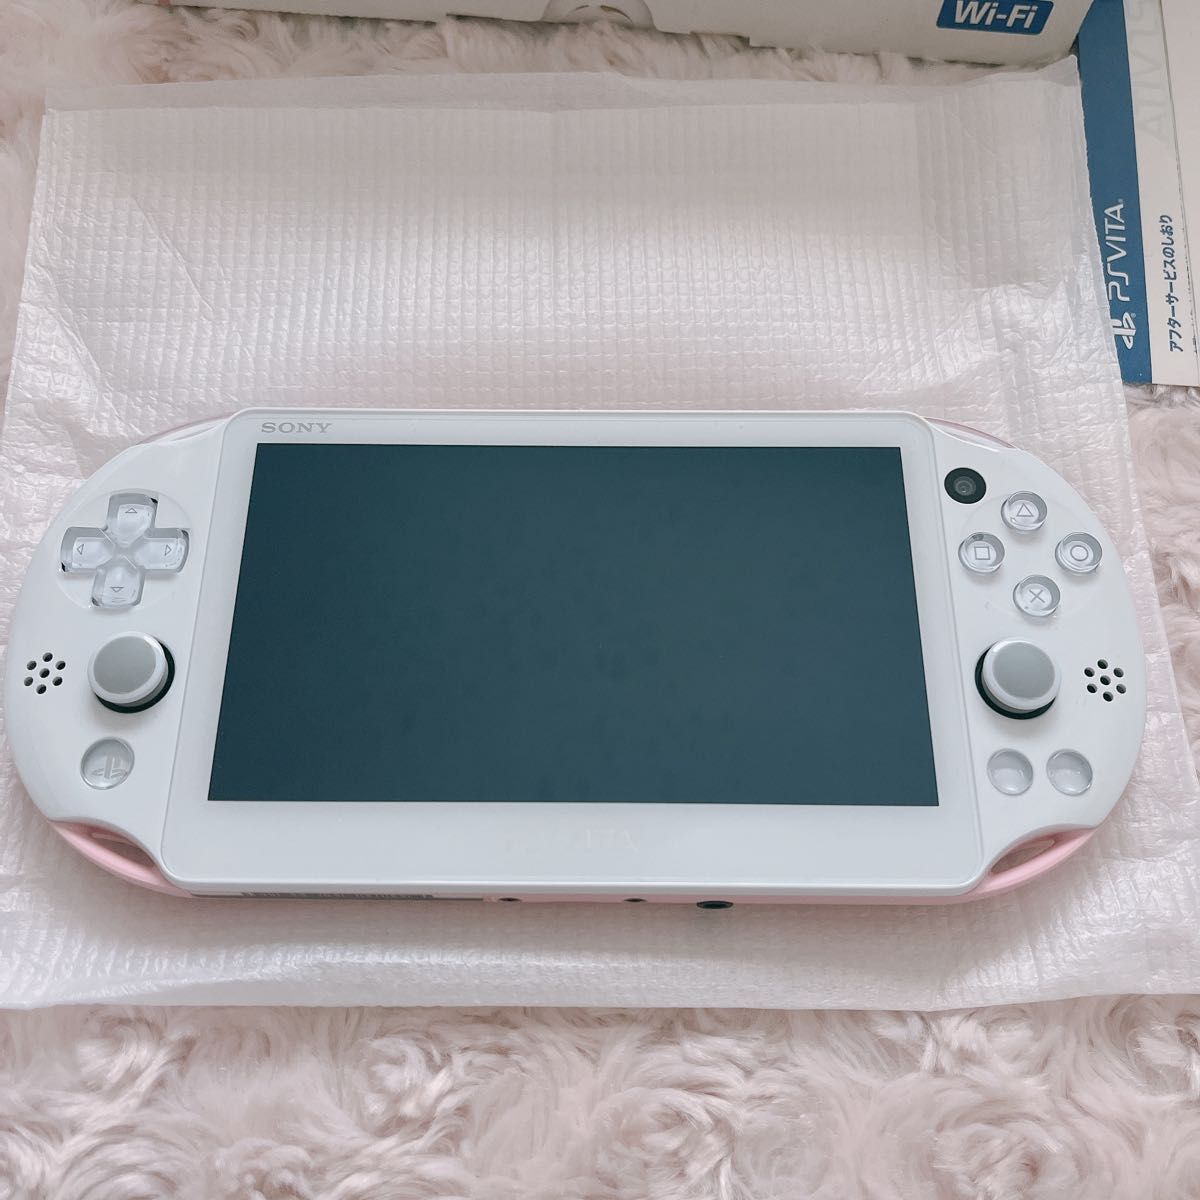 PlayStation Vita 本体 ライトピンク/ホワイト 64GB付き lhee.org